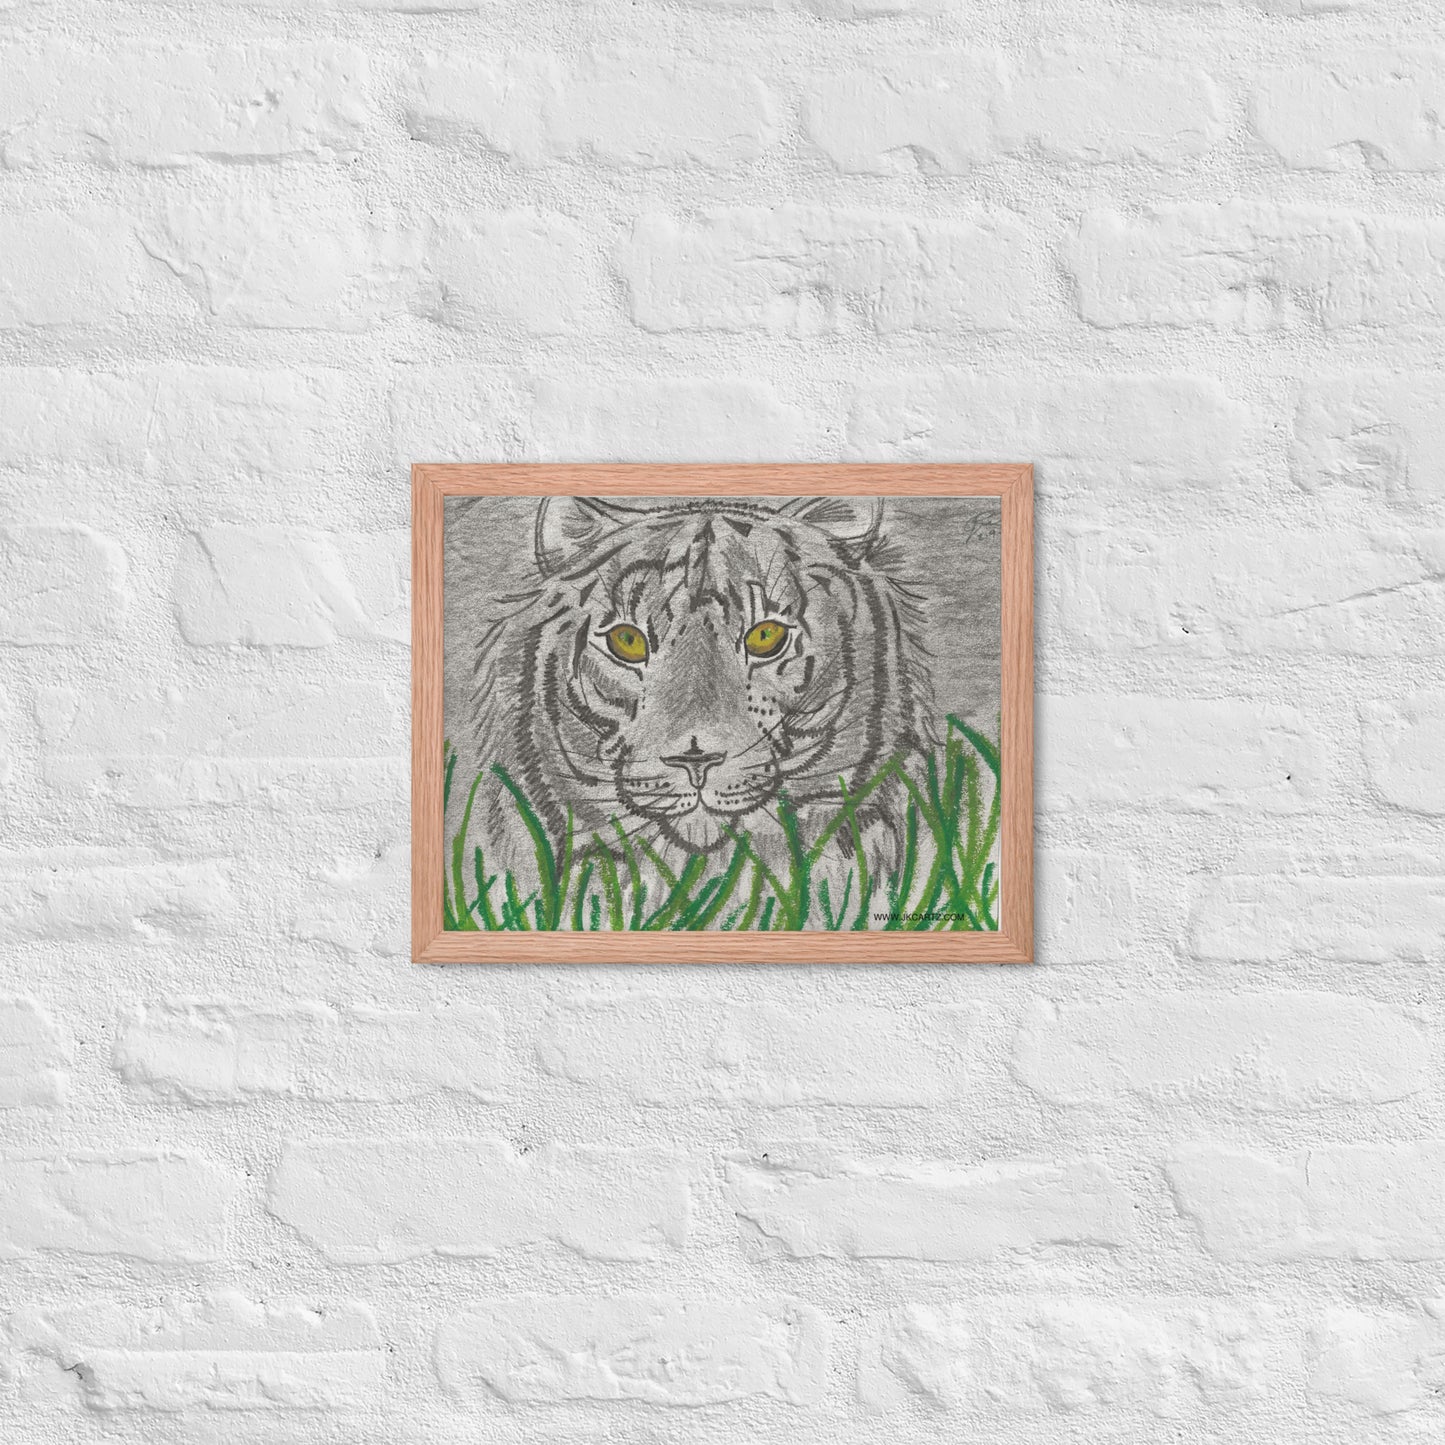 Tiger In Grass Jkc Artz Gallery Framed Poster